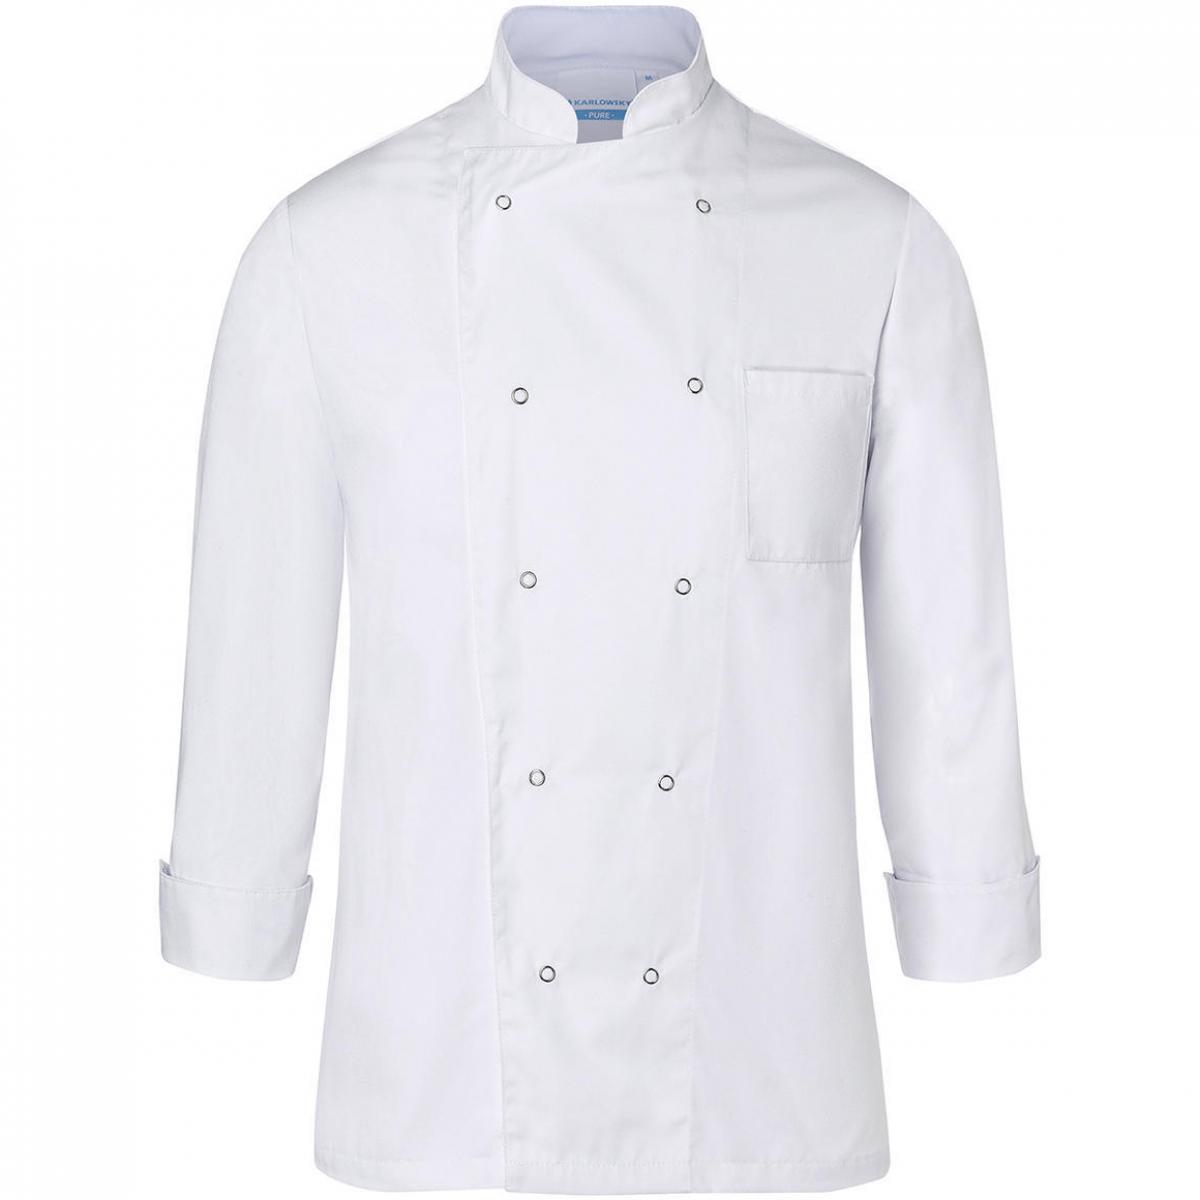 Hersteller: Karlowsky Herstellernummer: BJM 2 Artikelbezeichnung: Chef Jacket Basic Unisex Waschbar bis 60°C Farbe: White